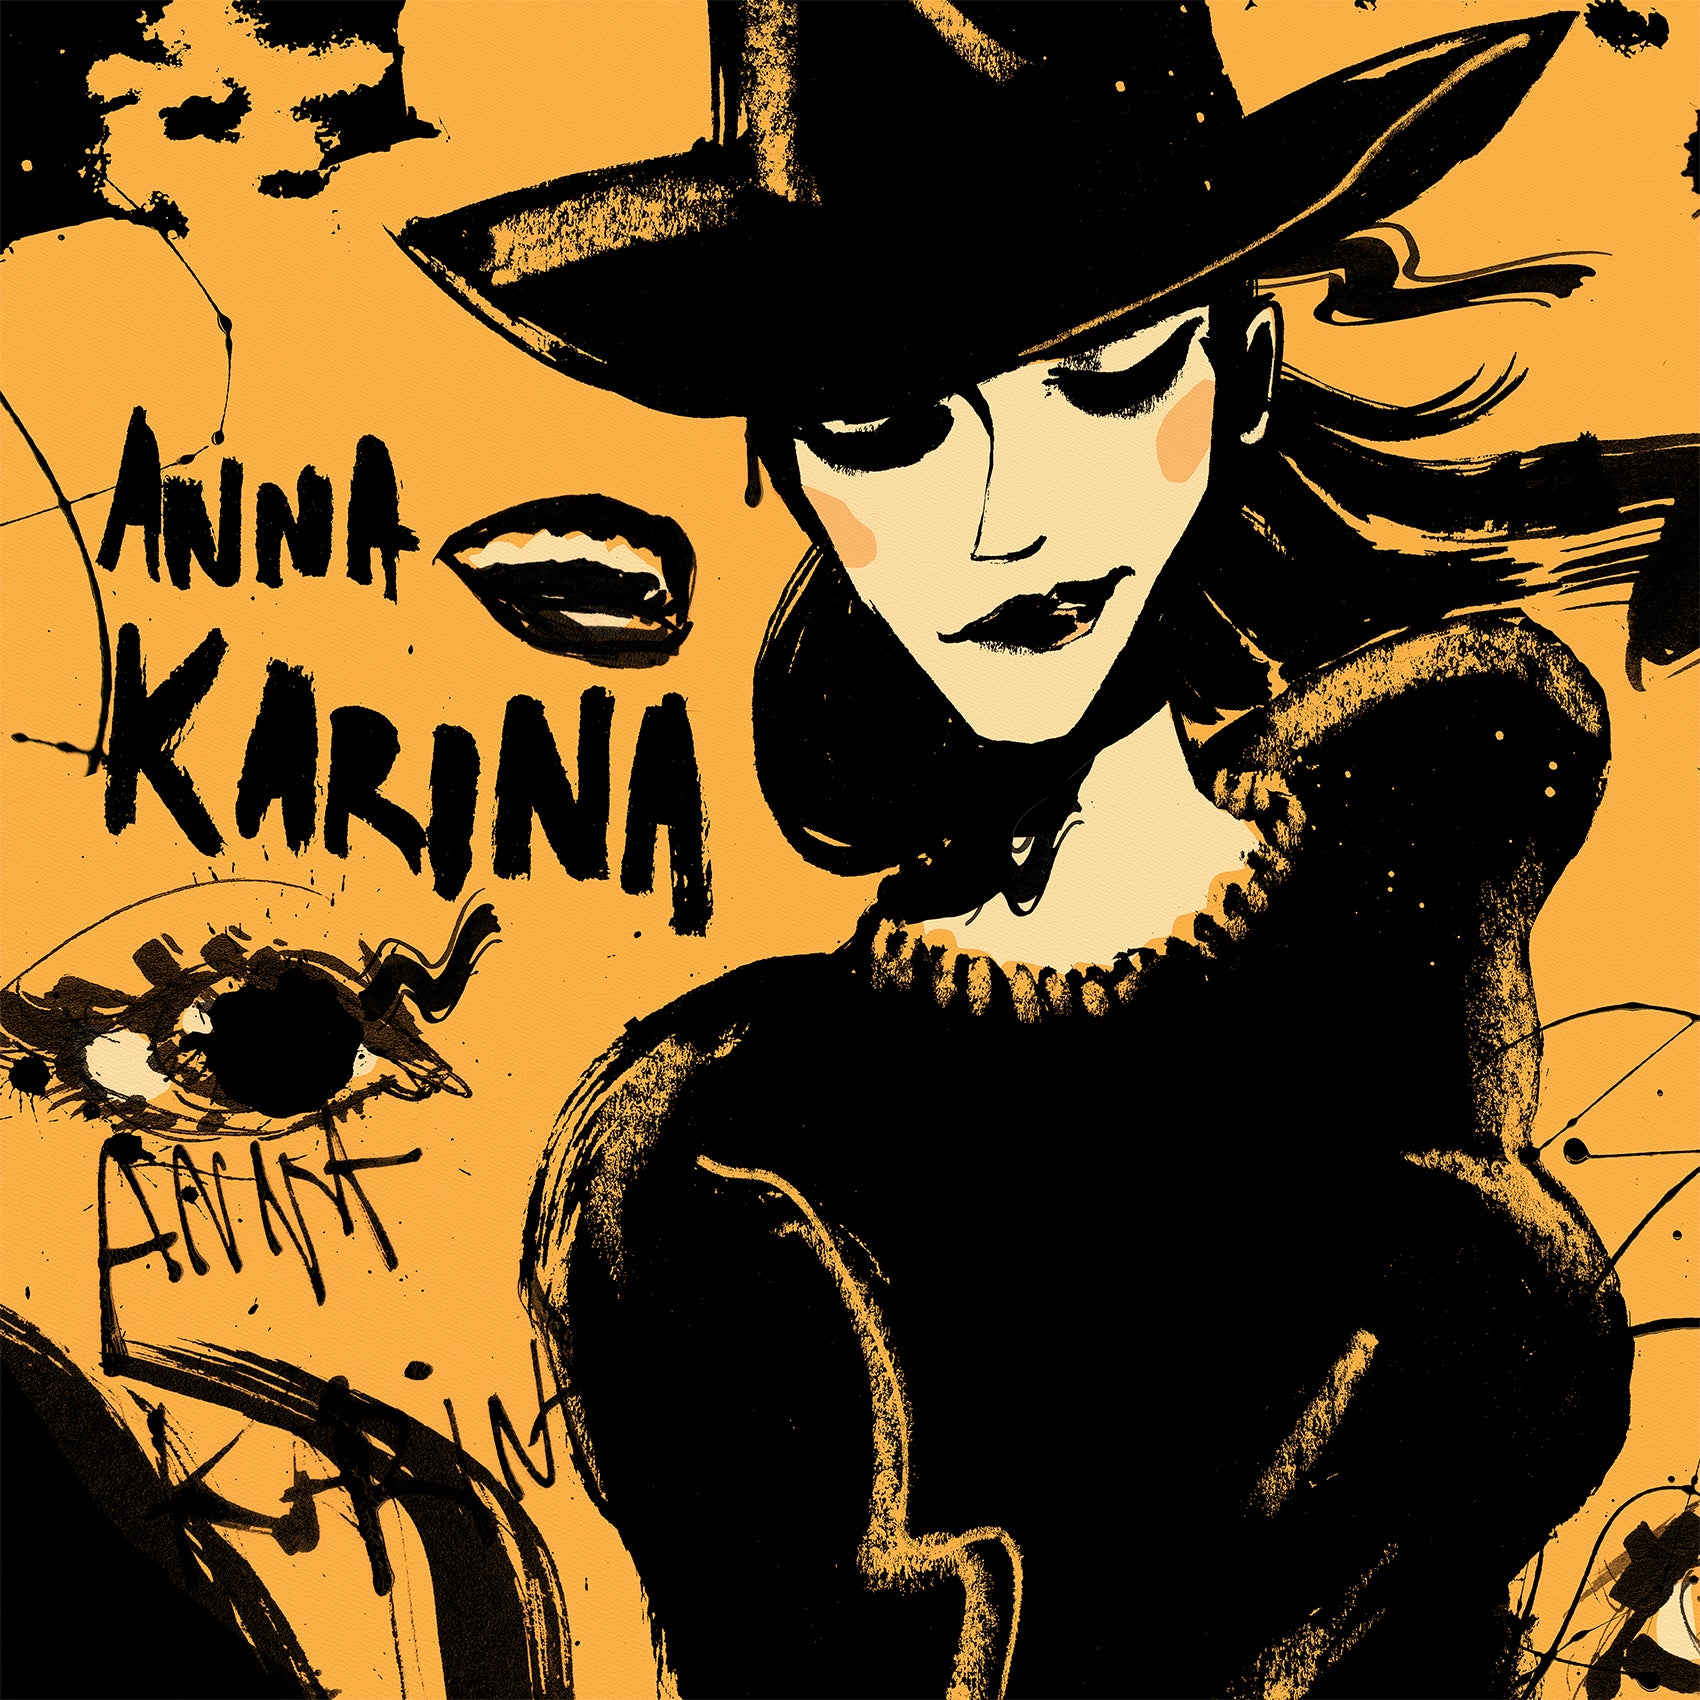 Strip apart - Anna Karina